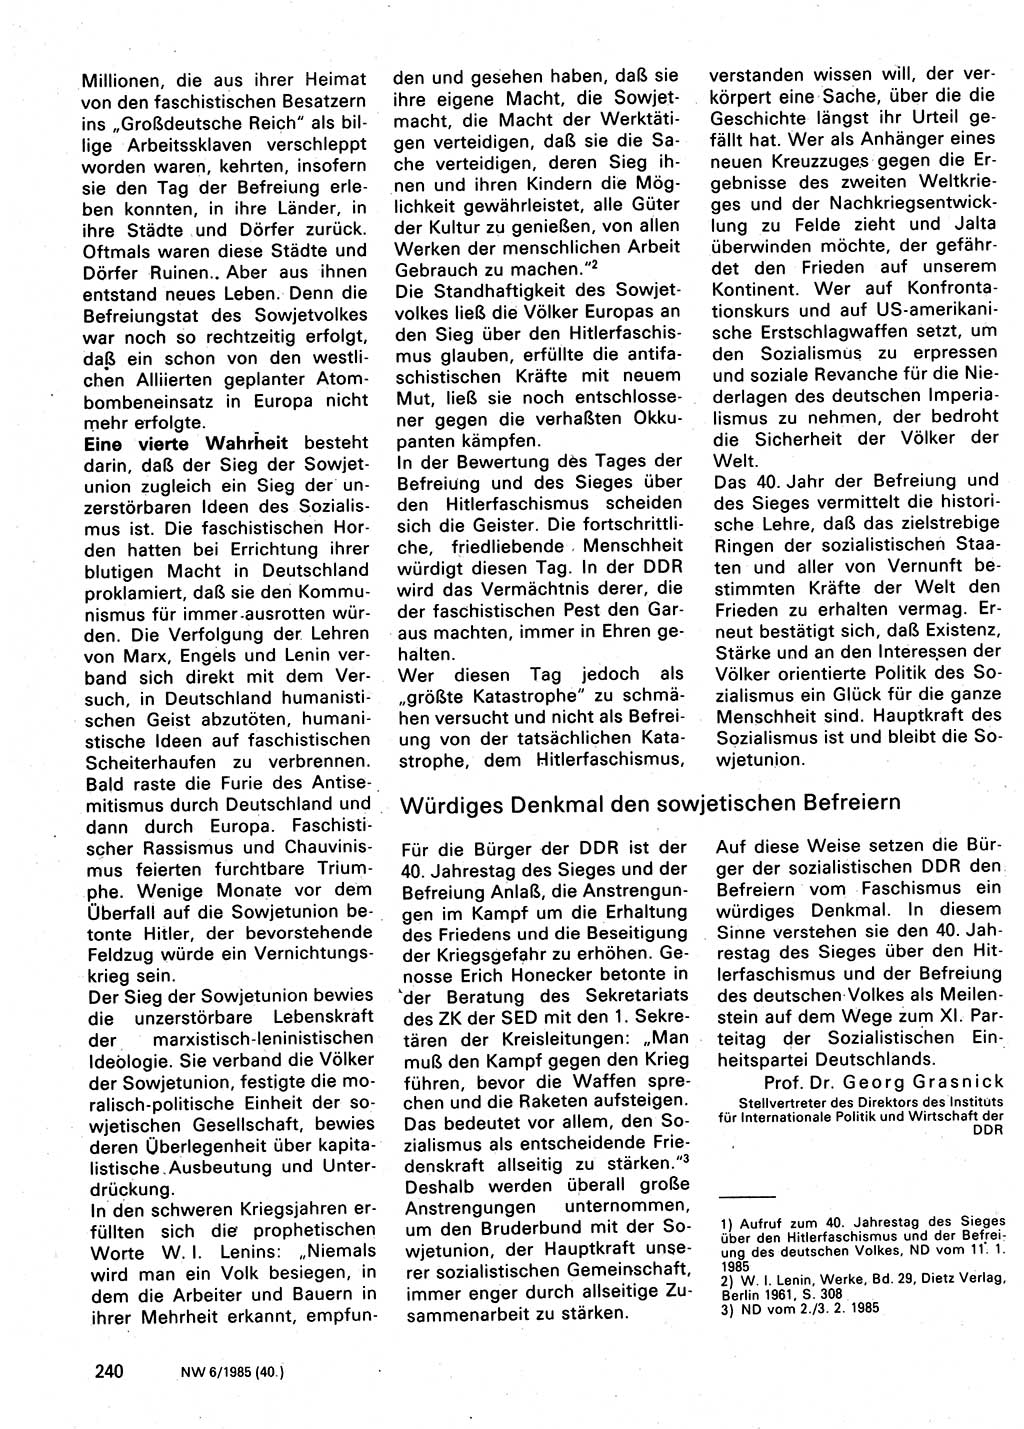 Neuer Weg (NW), Organ des Zentralkomitees (ZK) der SED (Sozialistische Einheitspartei Deutschlands) für Fragen des Parteilebens, 40. Jahrgang [Deutsche Demokratische Republik (DDR)] 1985, Seite 240 (NW ZK SED DDR 1985, S. 240)